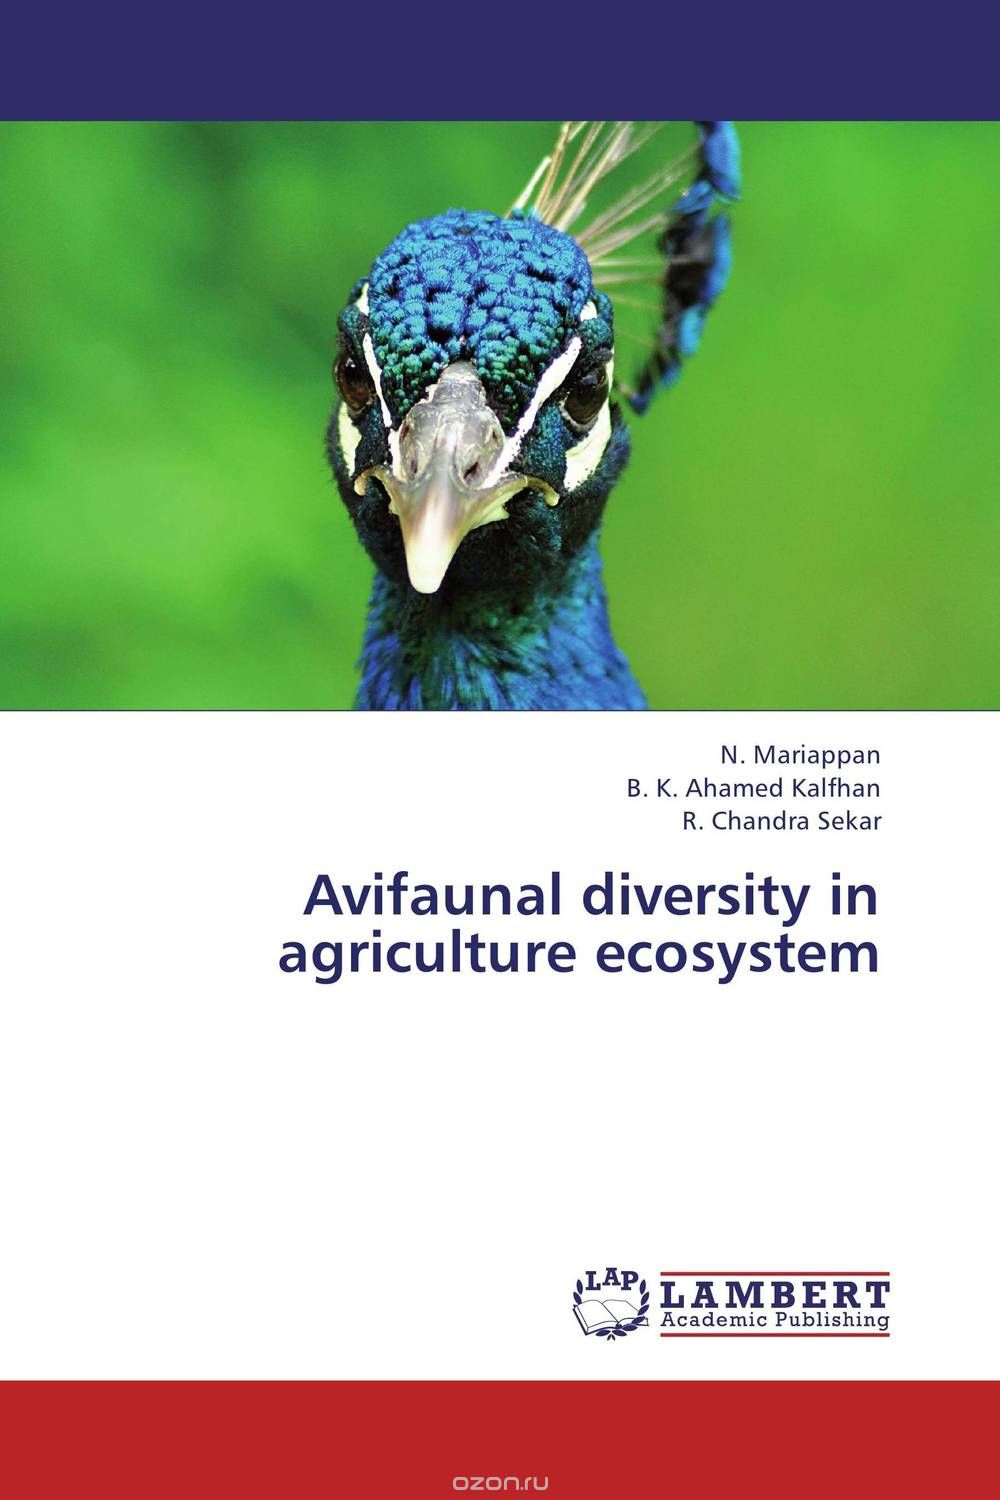 Скачать книгу "Avifaunal diversity in agriculture ecosystem"